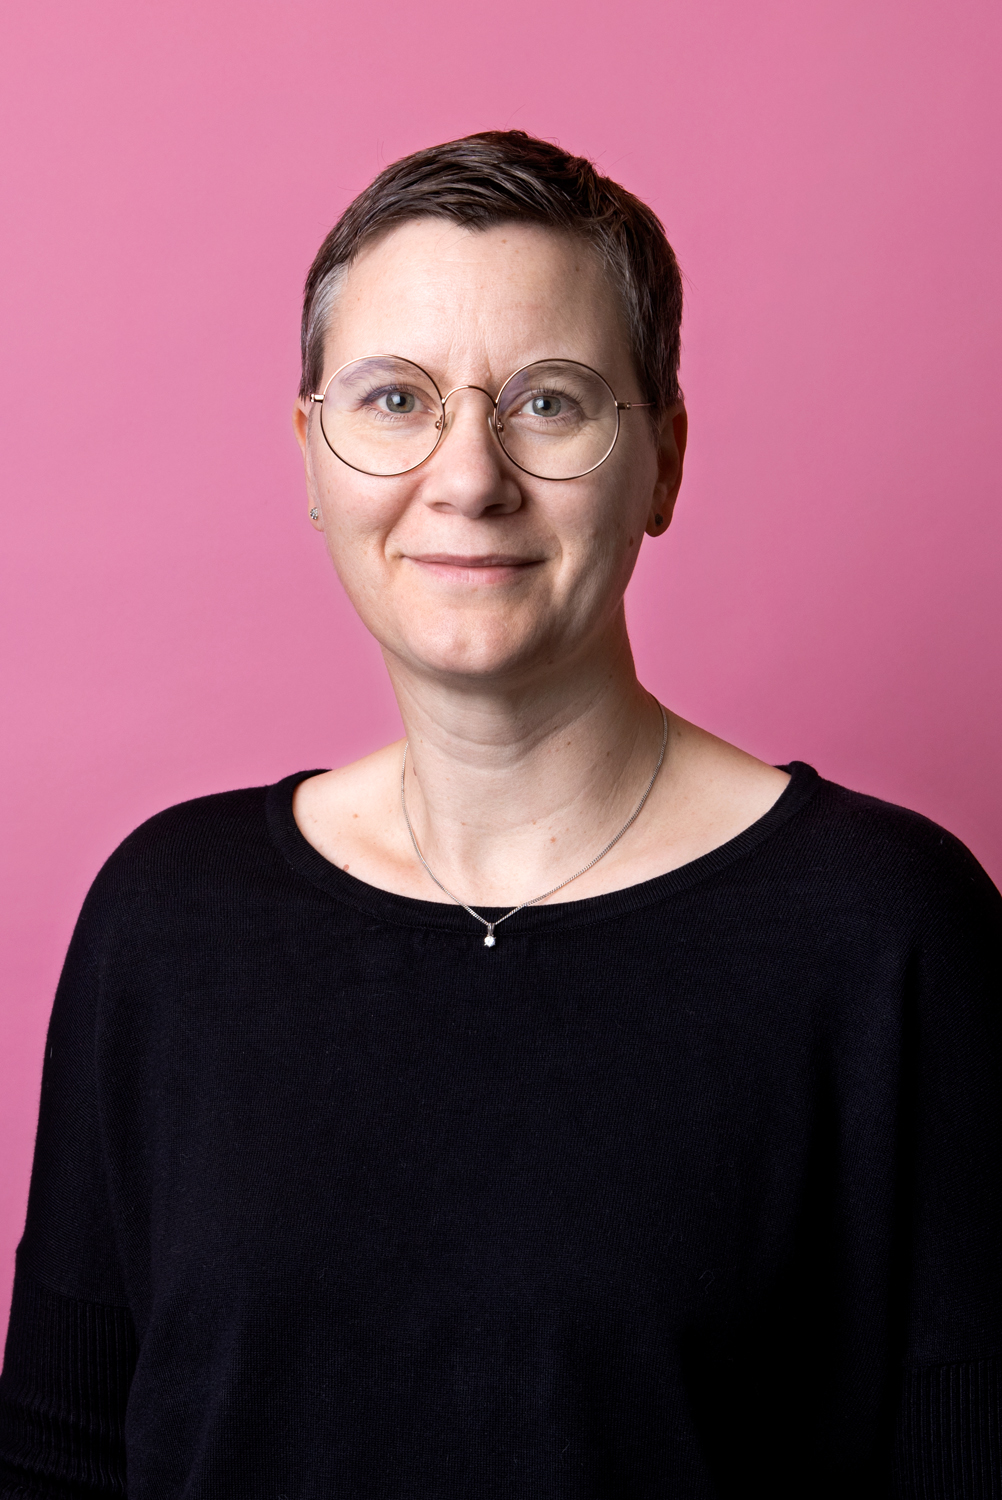 Porträttbild Annika Stigmark. Annika har kortklippt hår och runda glasögon.